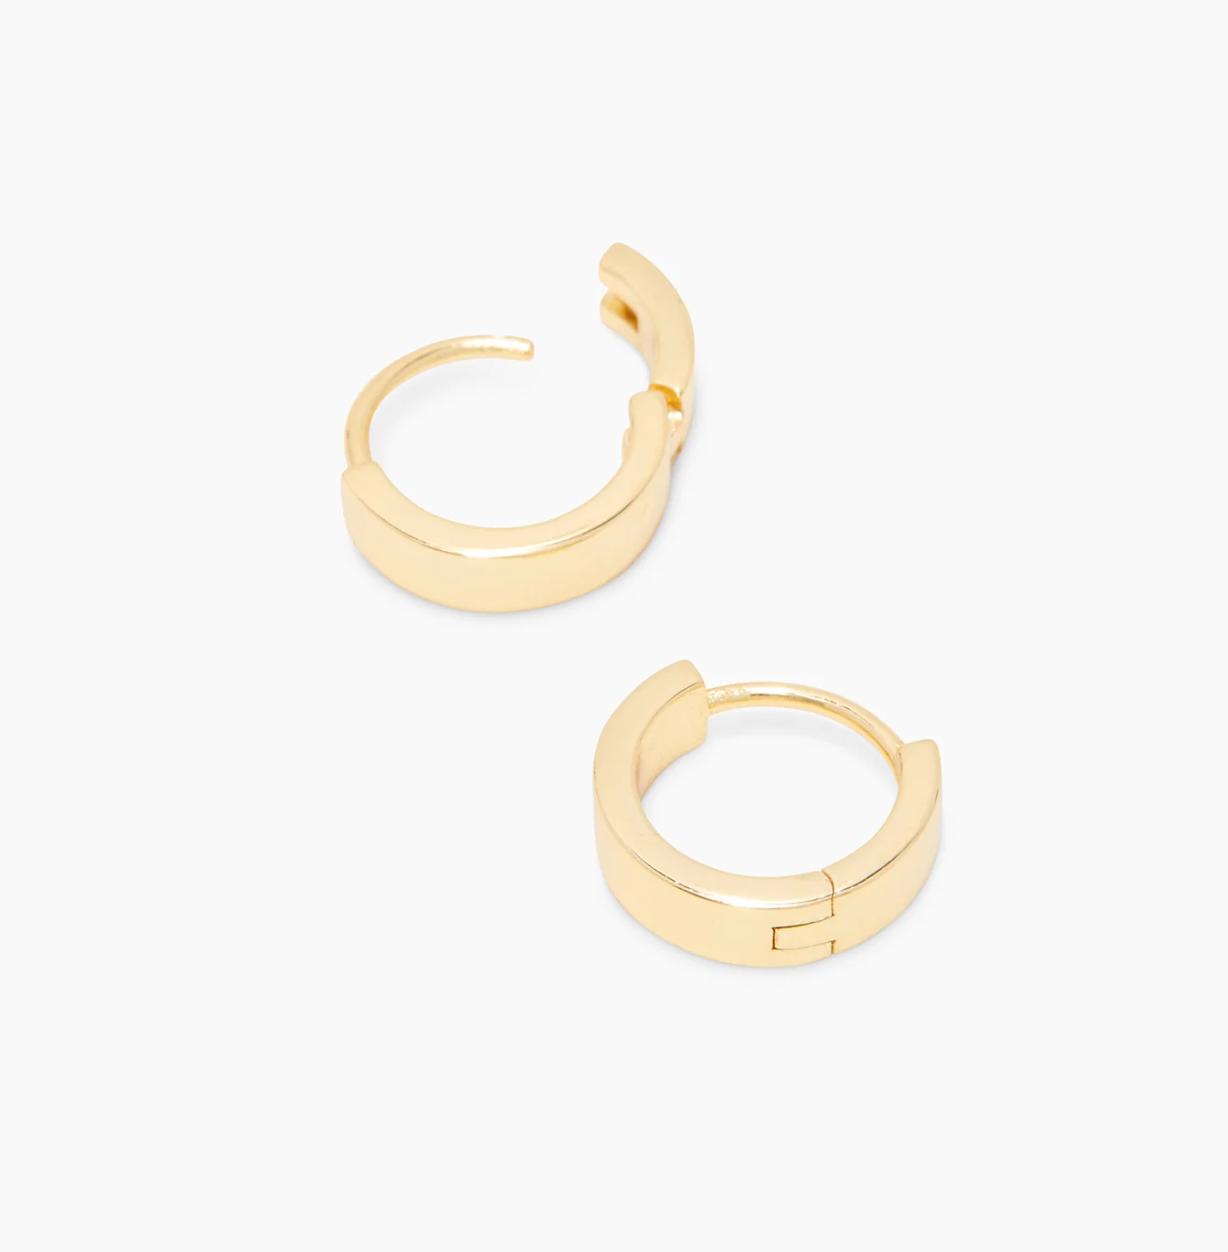 1/2 (Half) inch Gold gorjana Rose Huggie Earrings